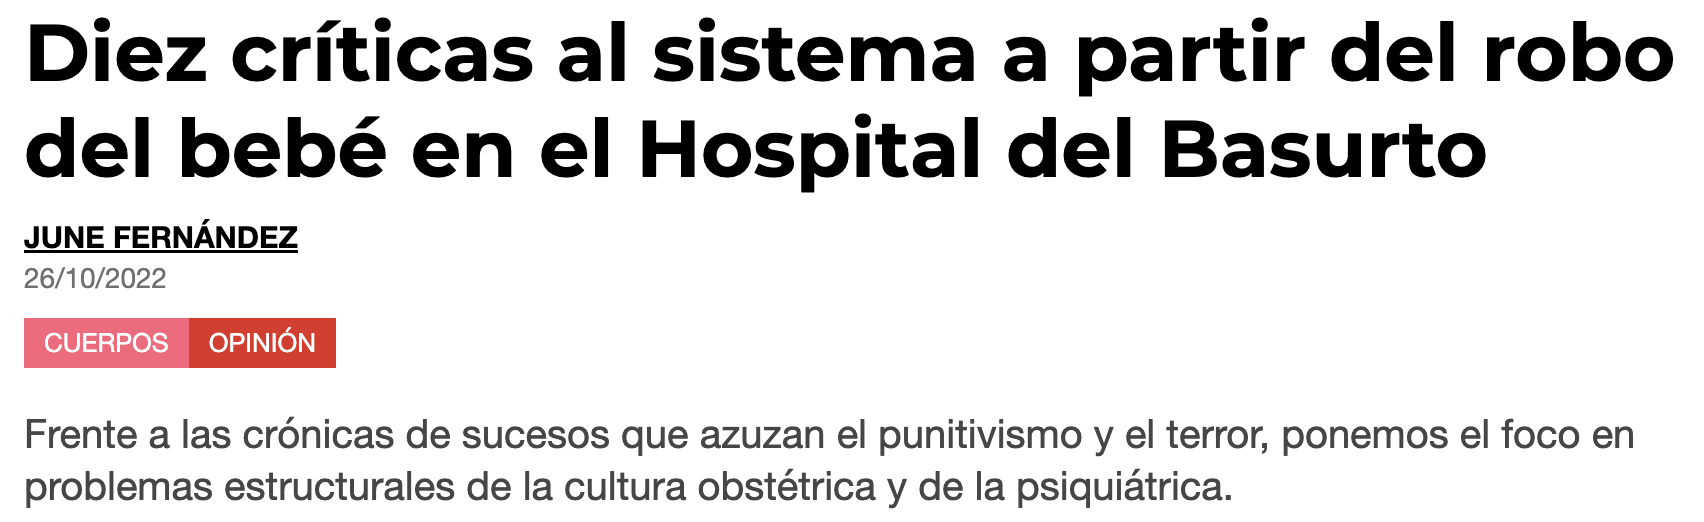 Pikara Magazine: Diez críticas al sistema a partir del robo del bebé en el Hospital del Basurto